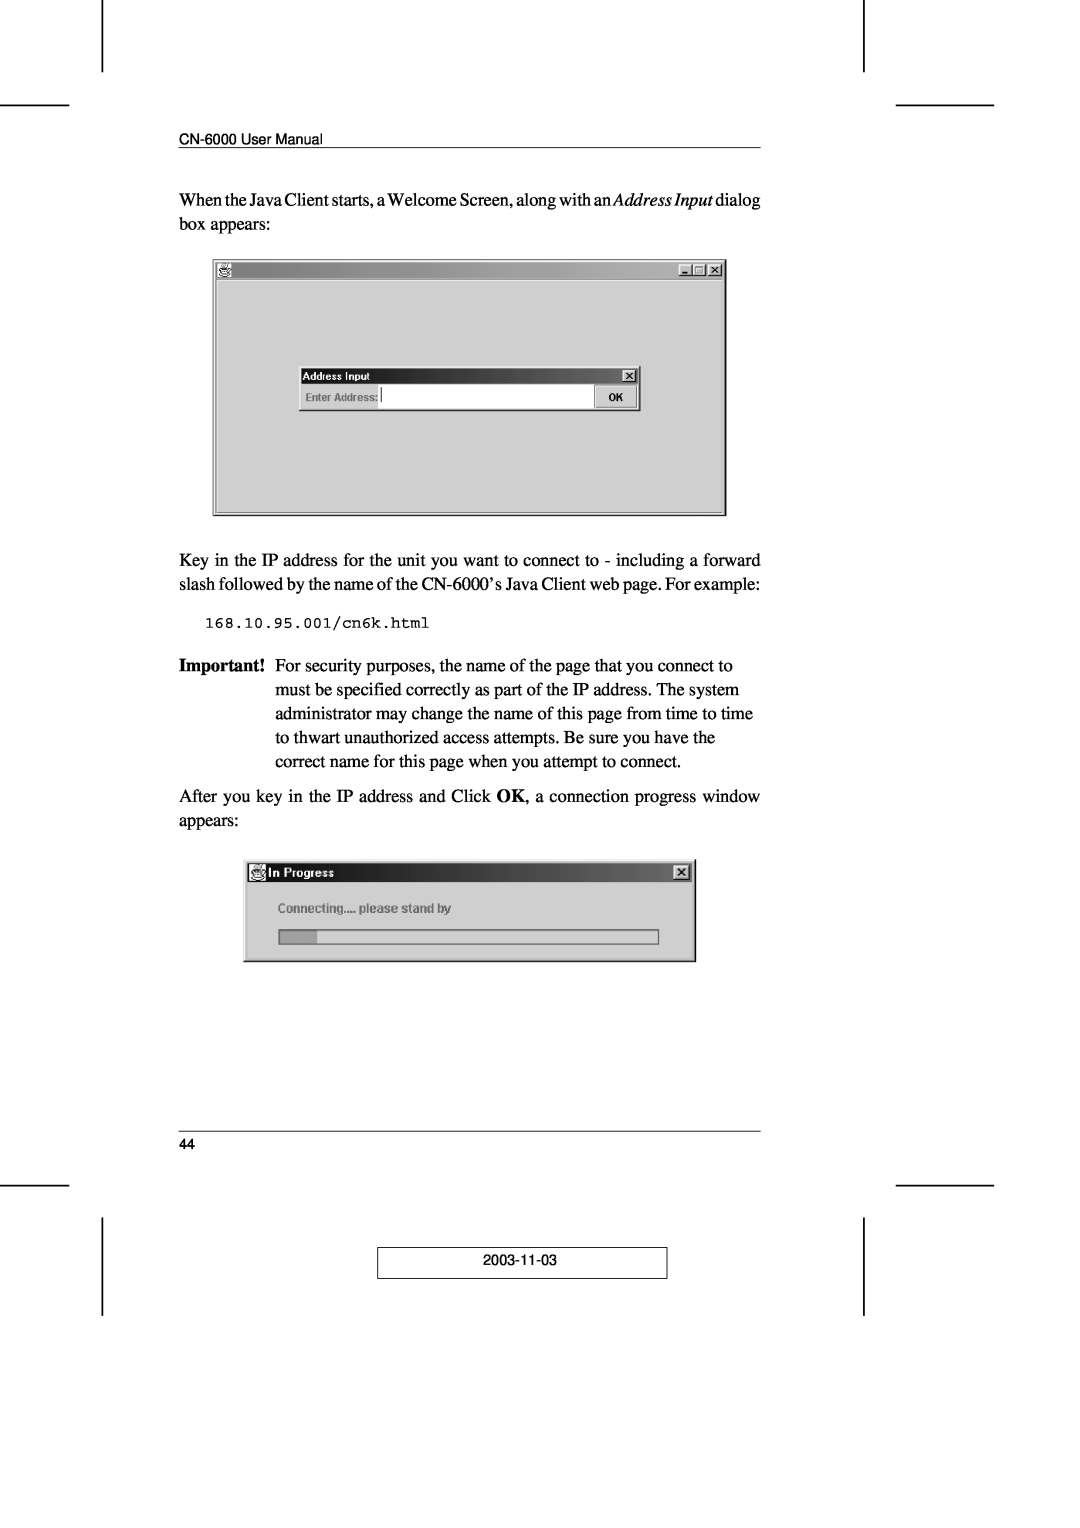 ATEN Technology CN-6000 user manual 168.10.95.001/cn6k.html, 2003-11-03 